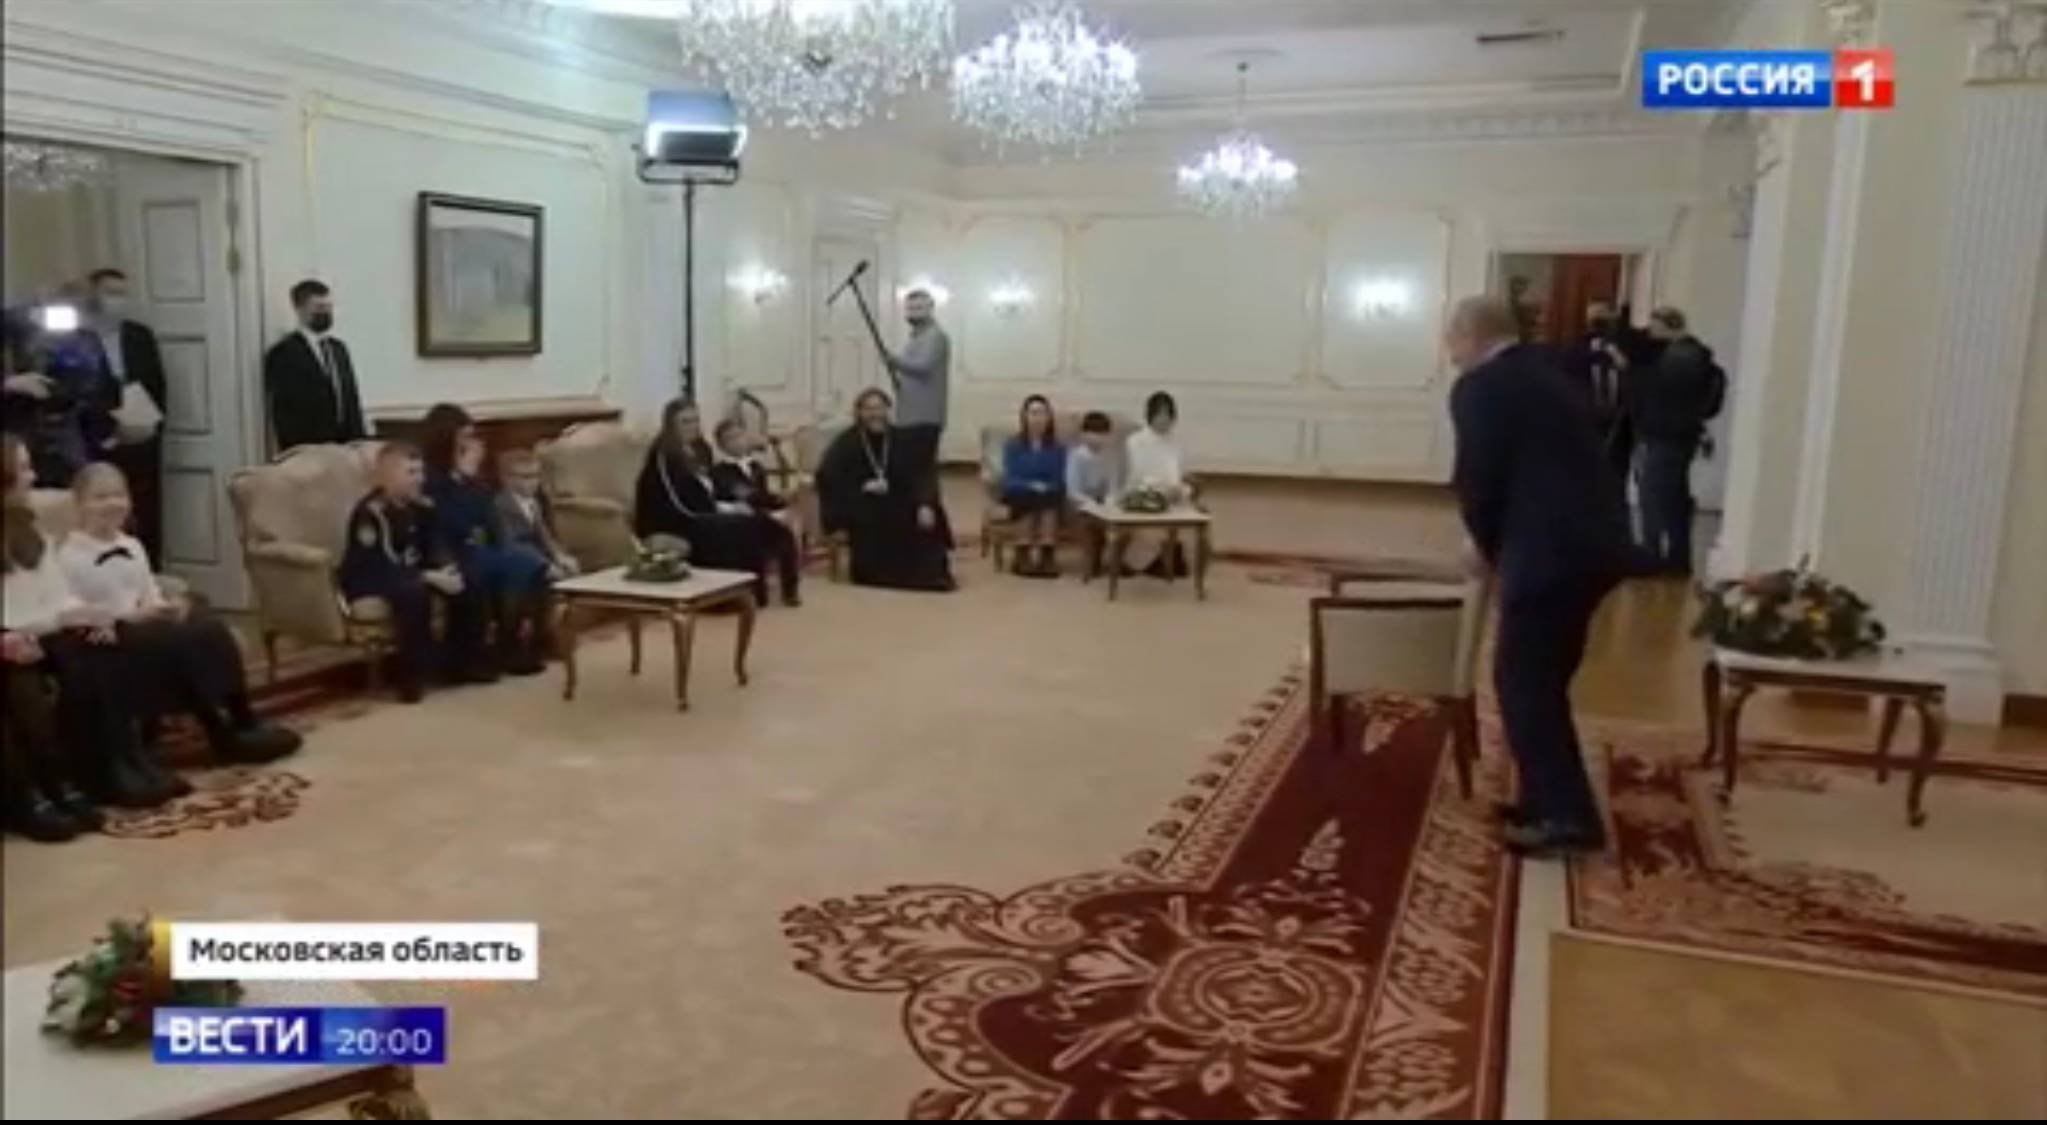 Putin siada na krześle. Po drugiej stronie pod świaną na fotelach i kozetkach dzieci z matkami